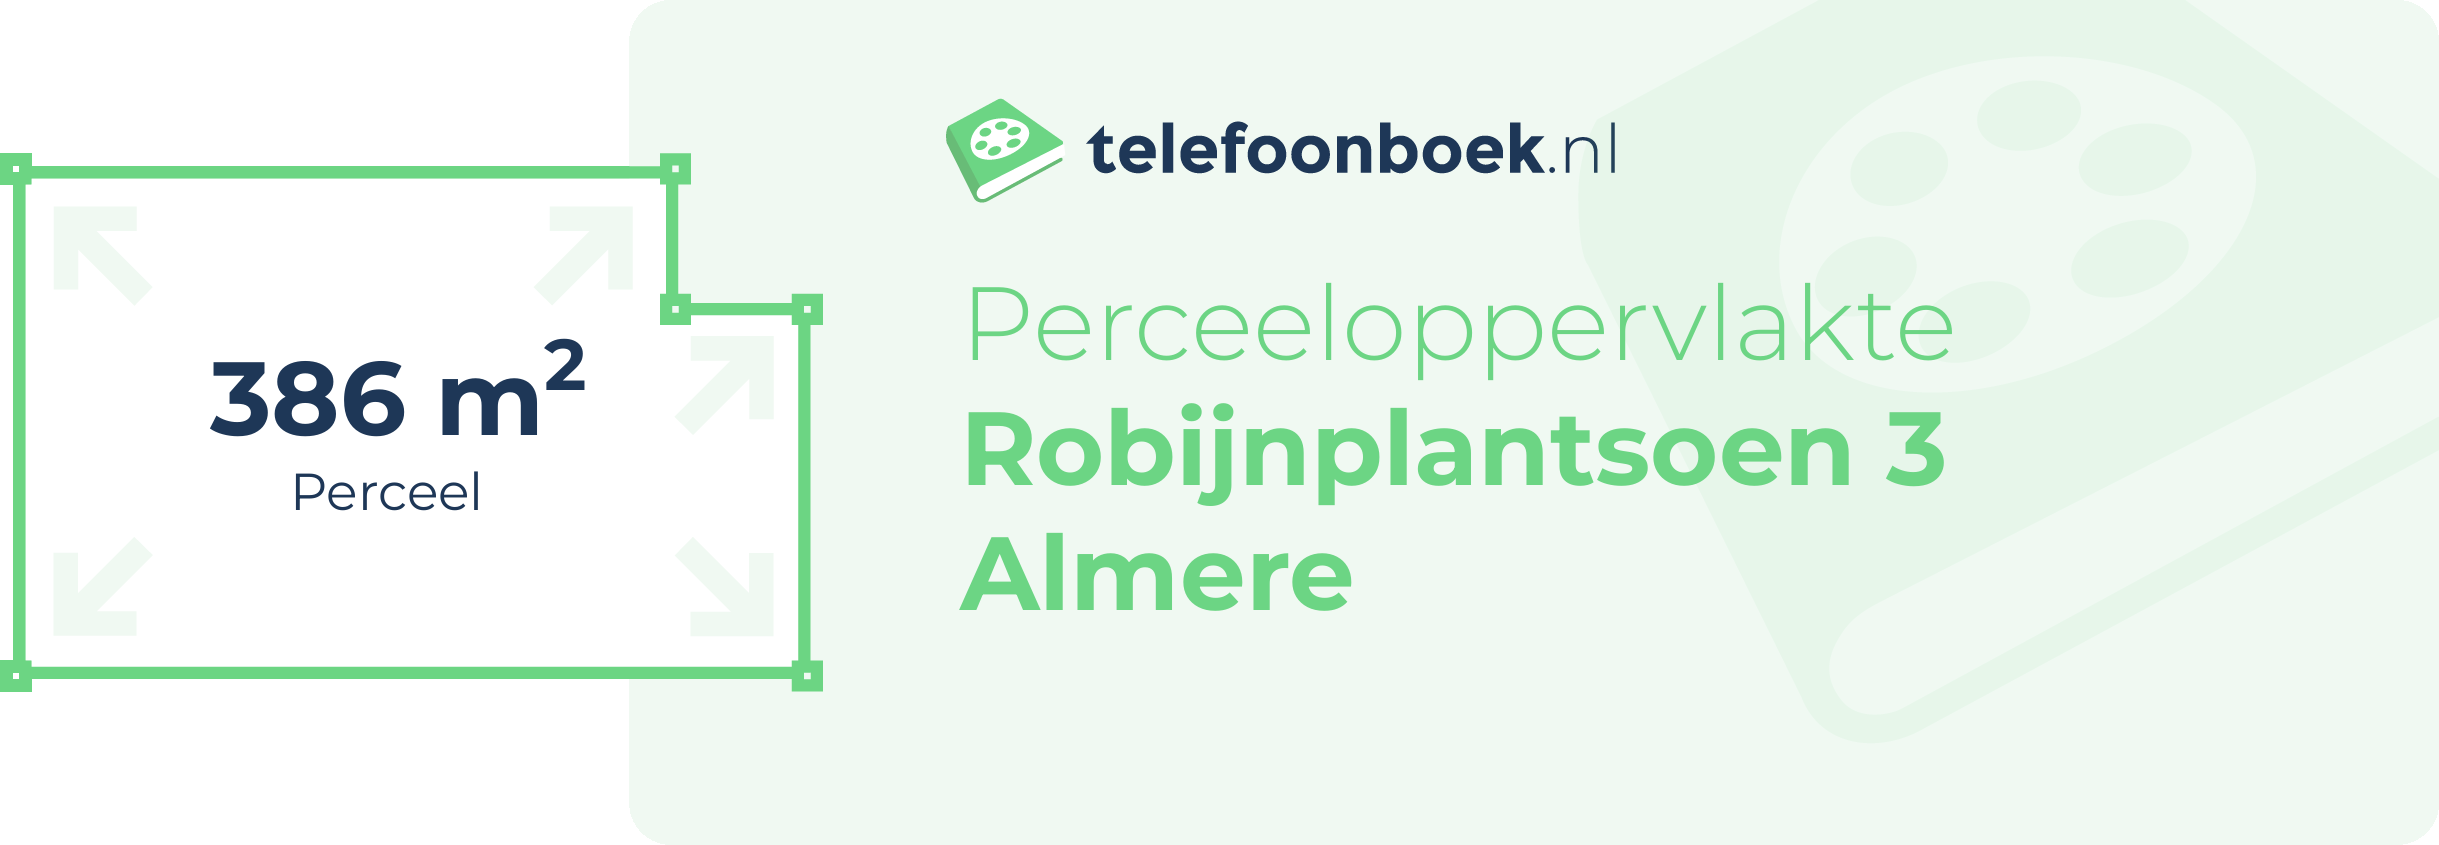 Perceeloppervlakte Robijnplantsoen 3 Almere